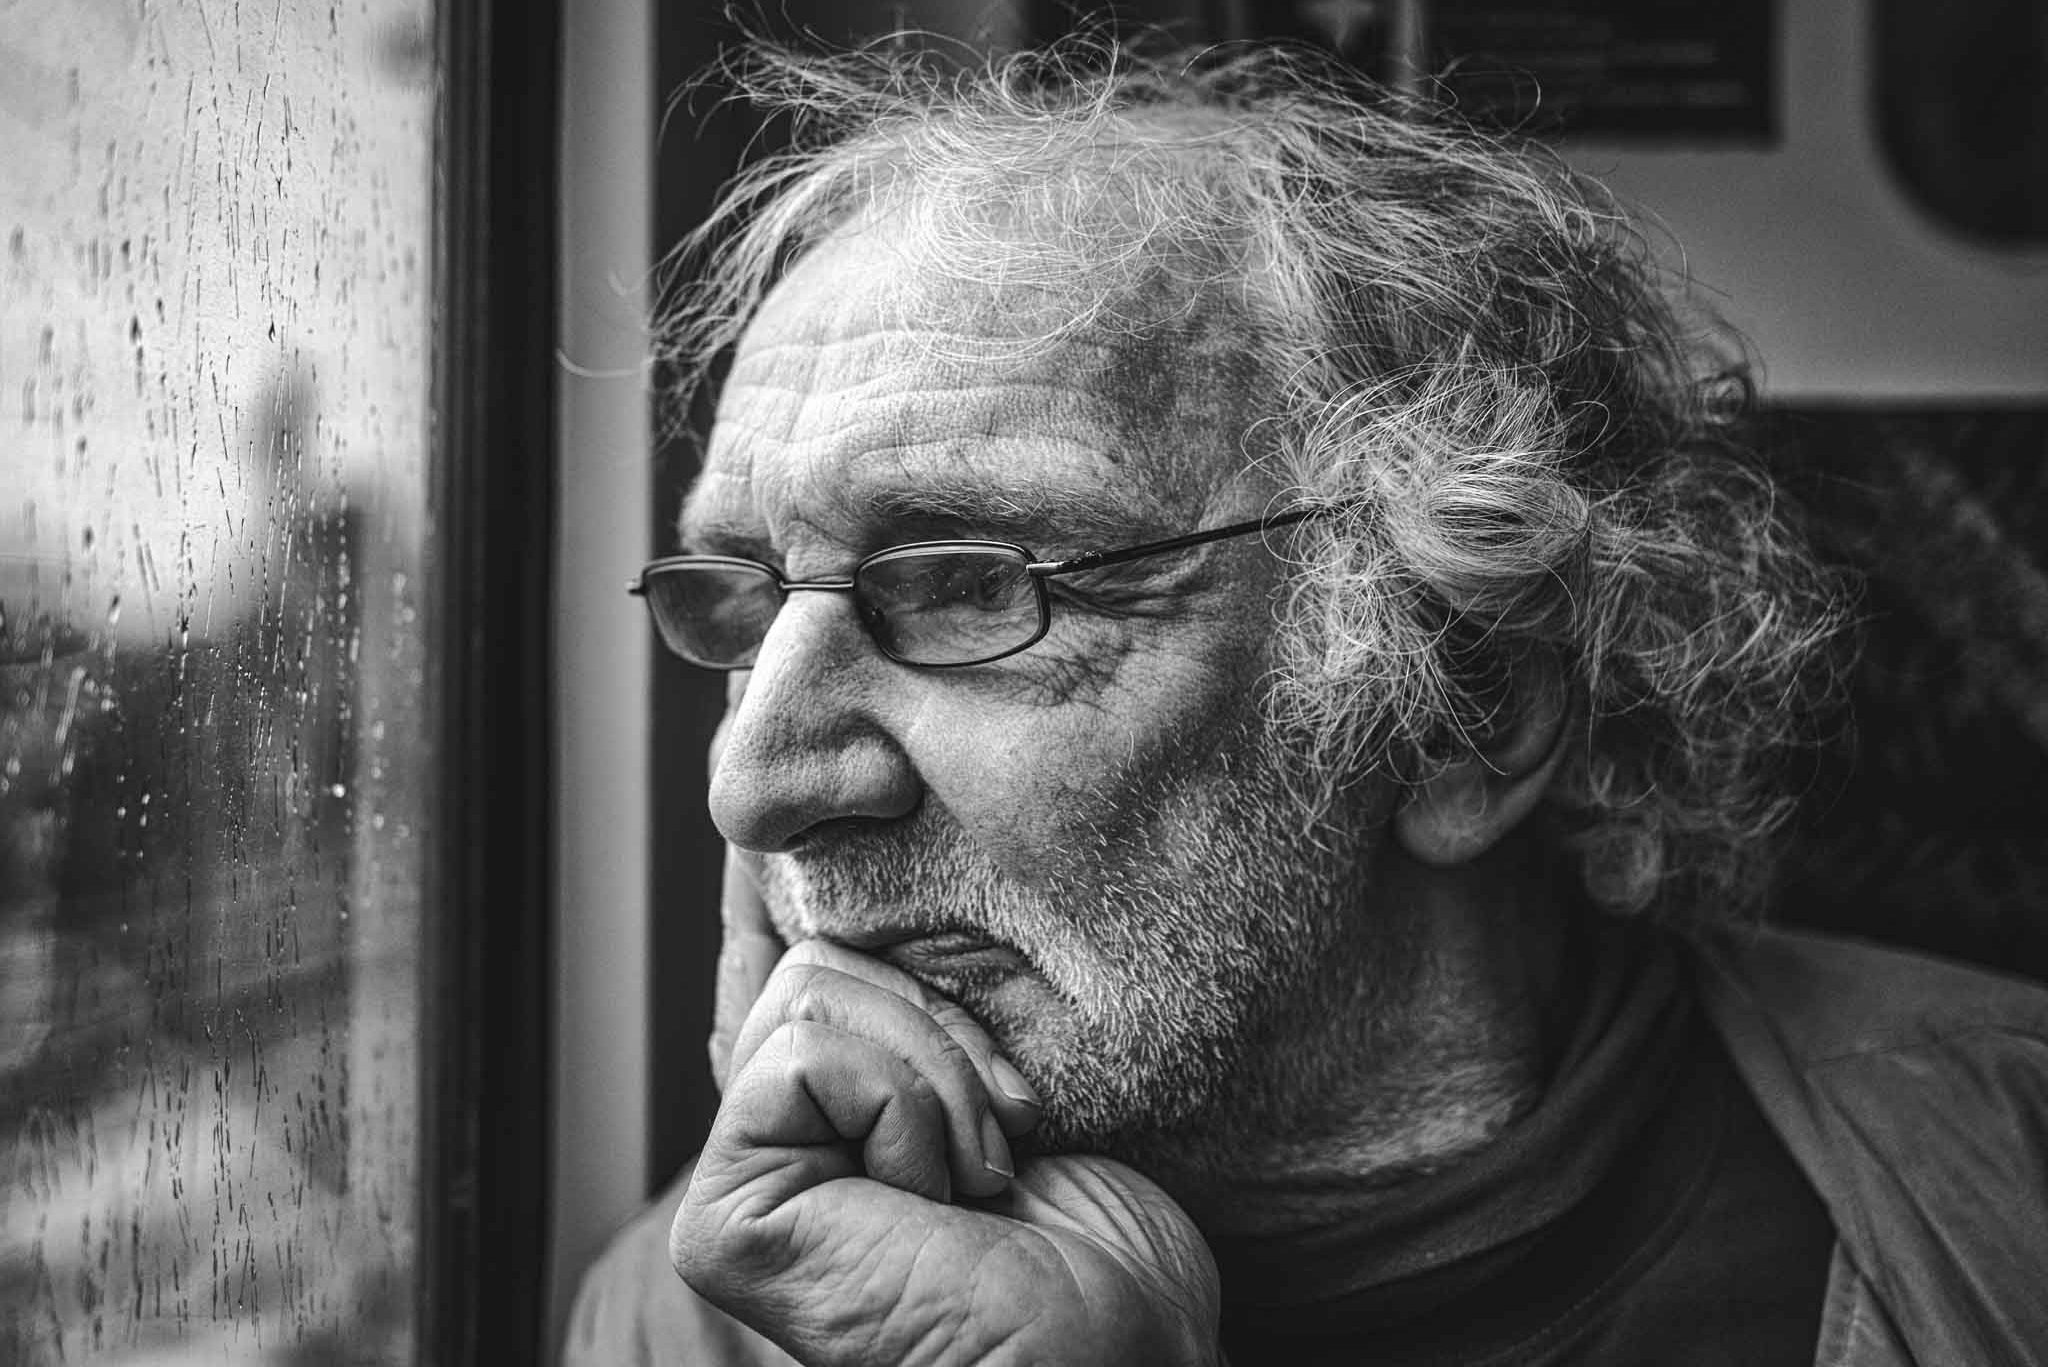 Porträt von einem alten Mann im Zug. Er hat den Kopf auf eine Hand gestützt und schaut aus dem Fenster. Man sieht ihm sein Leben an den Falten in Gesicht und Hand an.